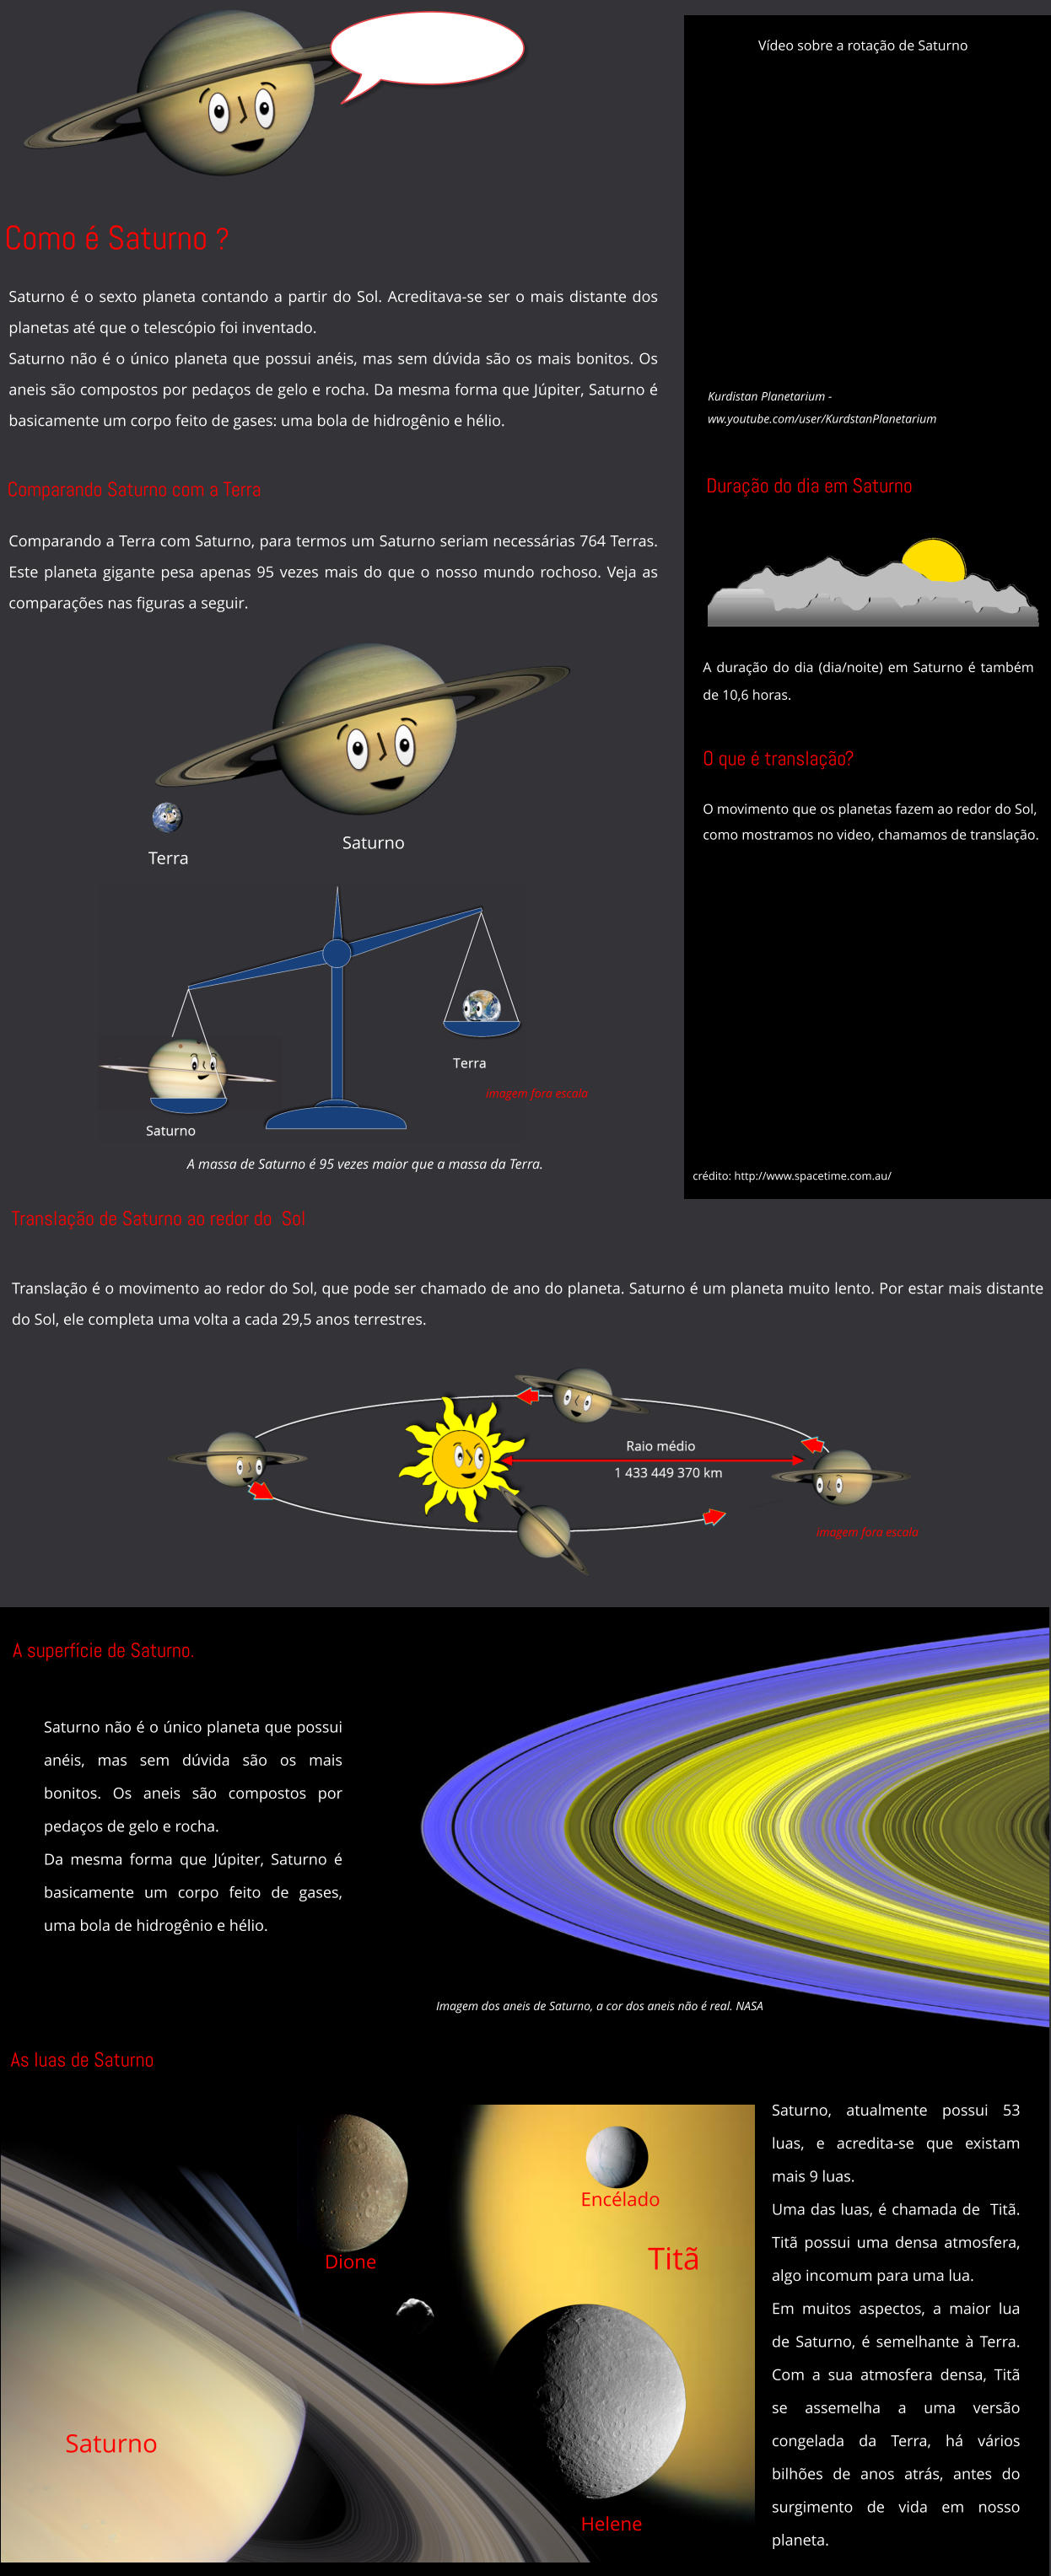 Como é Saturno ? Saturno Comparando Saturno com a Terra Translação de Saturno ao redor do  Sol Kurdistan Planetarium -  ww.youtube.com/user/KurdstanPlanetarium A massa de Saturno é 95 vezes maior que a massa da Terra. Translação é o movimento ao redor do Sol, que pode ser chamado de ano do planeta. Saturno é um planeta muito lento. Por estar mais distante do Sol, ele completa uma volta a cada 29,5 anos terrestres.  As luas de Saturno Saturno, atualmente possui 53 luas, e acredita-se que existam mais 9 luas.  Uma das luas, é chamada de  Titã. Titã possui uma densa atmosfera, algo incomum para uma lua. Em muitos aspectos, a maior lua de Saturno, é semelhante à Terra. Com a sua atmosfera densa, Titã se assemelha a uma versão congelada da Terra, há vários bilhões de anos atrás, antes do surgimento de vida em nosso planeta. Encélado Titã Dione Helene Saturno Saturno é o sexto planeta contando a partir do Sol. Acreditava-se ser o mais distante dos planetas até que o telescópio foi inventado.  Saturno não é o único planeta que possui anéis, mas sem dúvida são os mais bonitos. Os aneis são compostos por pedaços de gelo e rocha. Da mesma forma que Júpiter, Saturno é basicamente um corpo feito de gases: uma bola de hidrogênio e hélio. Saturno não é o único planeta que possui anéis, mas sem dúvida são os mais bonitos. Os aneis são compostos por pedaços de gelo e rocha.  Da mesma forma que Júpiter, Saturno é basicamente um corpo feito de gases, uma bola de hidrogênio e hélio.  Terra Comparando a Terra com Saturno, para termos um Saturno seriam necessárias 764 Terras. Este planeta gigante pesa apenas 95 vezes mais do que o nosso mundo rochoso. Veja as comparações nas figuras a seguir. imagem fora escala A superfície de Saturno. Imagem dos aneis de Saturno, a cor dos aneis não é real. NASA Duração do dia em Saturno A duração do dia (dia/noite) em Saturno é também de 10,6 horas. Vídeo sobre a rotação de Saturno imagem fora escala O que é translação? O movimento que os planetas fazem ao redor do Sol, como mostramos no video, chamamos de translação. crédito: http://www.spacetime.com.au/